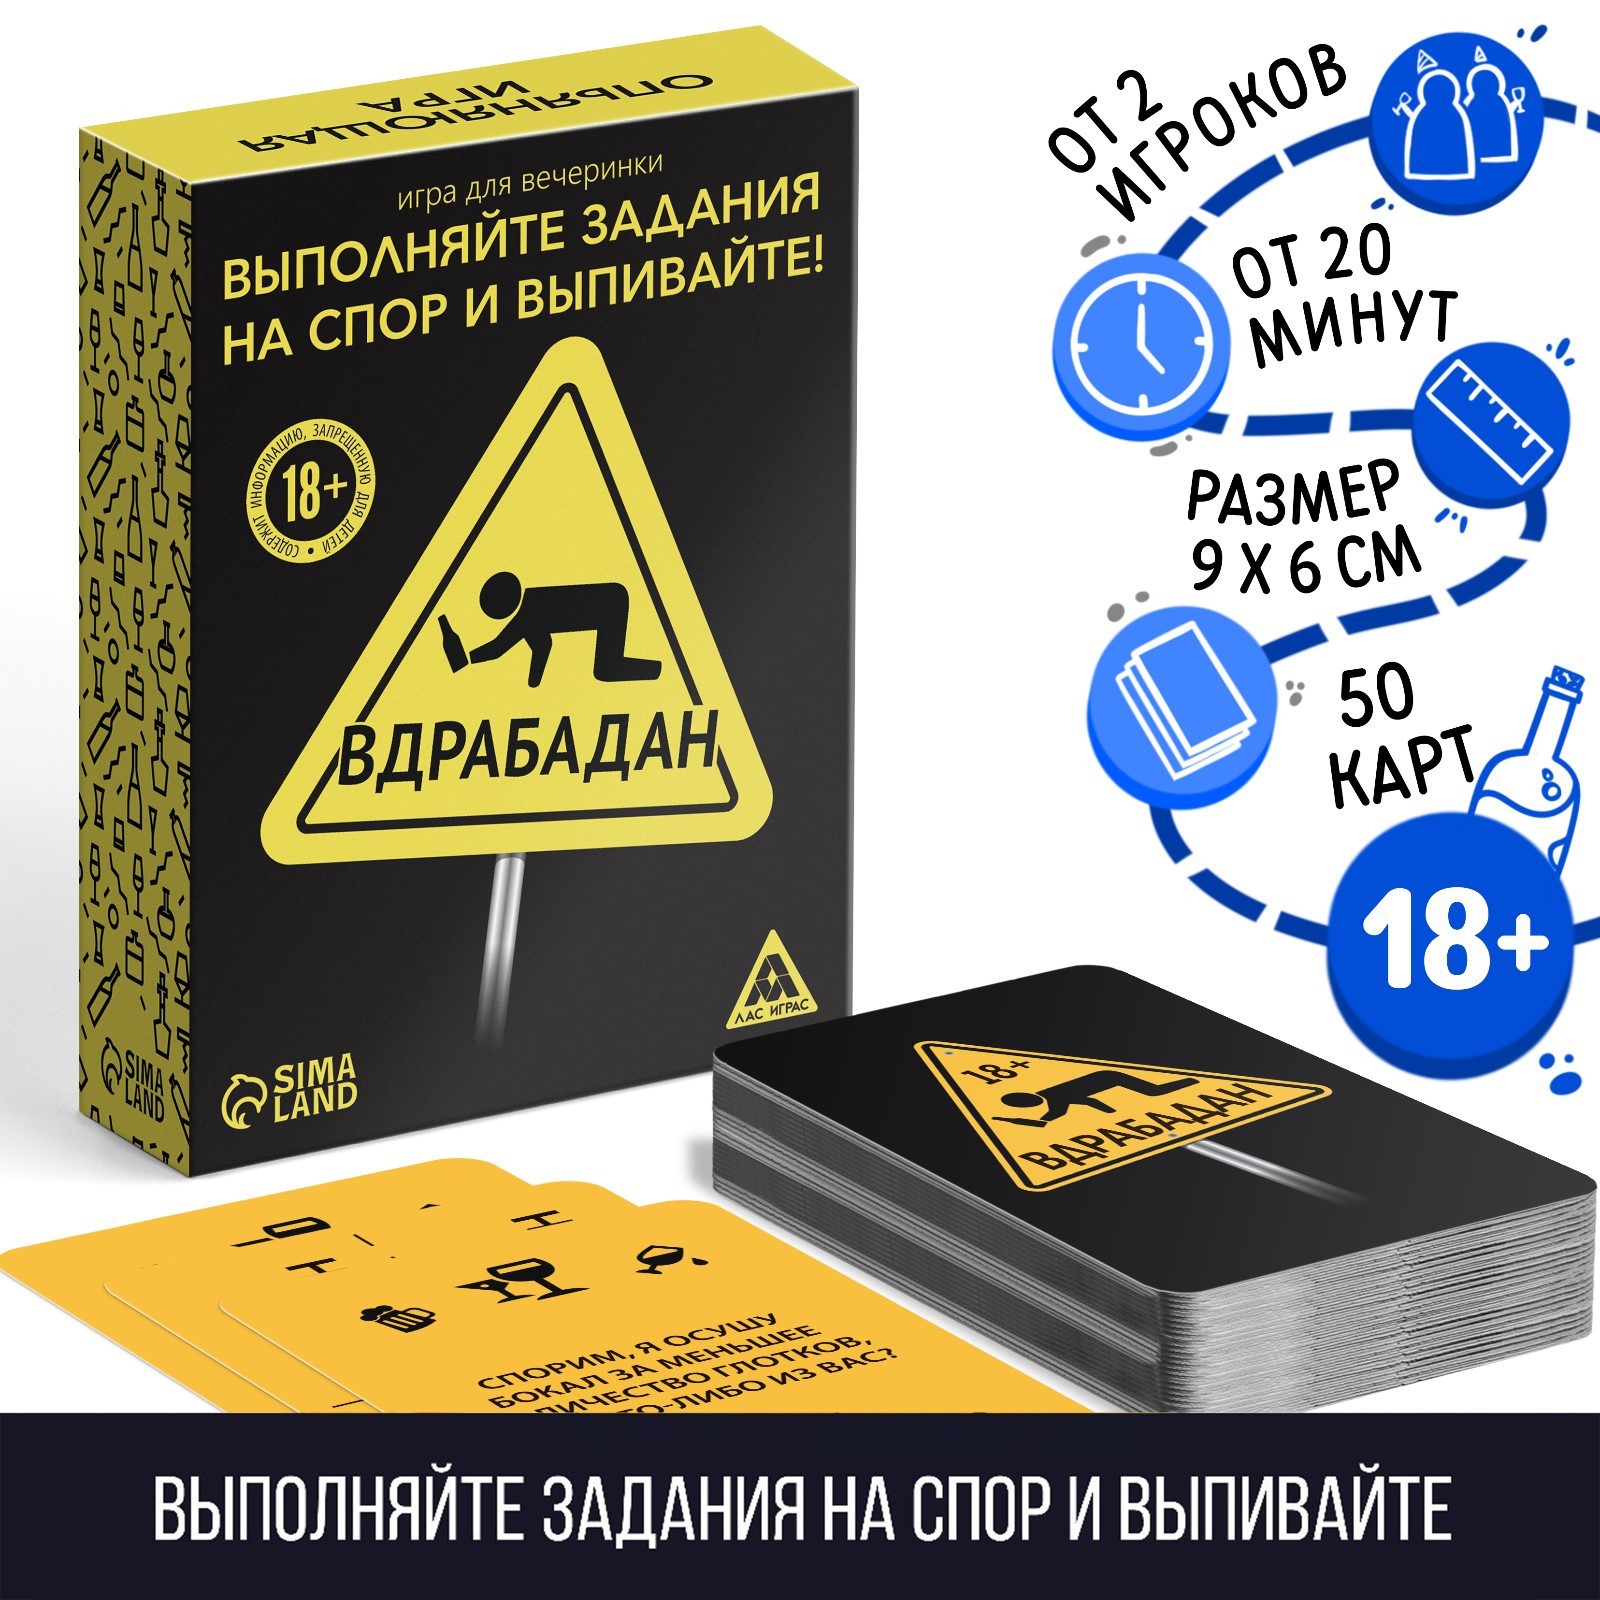 Игра для вечеринки Вдрабадан, 70 карт, 18+ 1320764